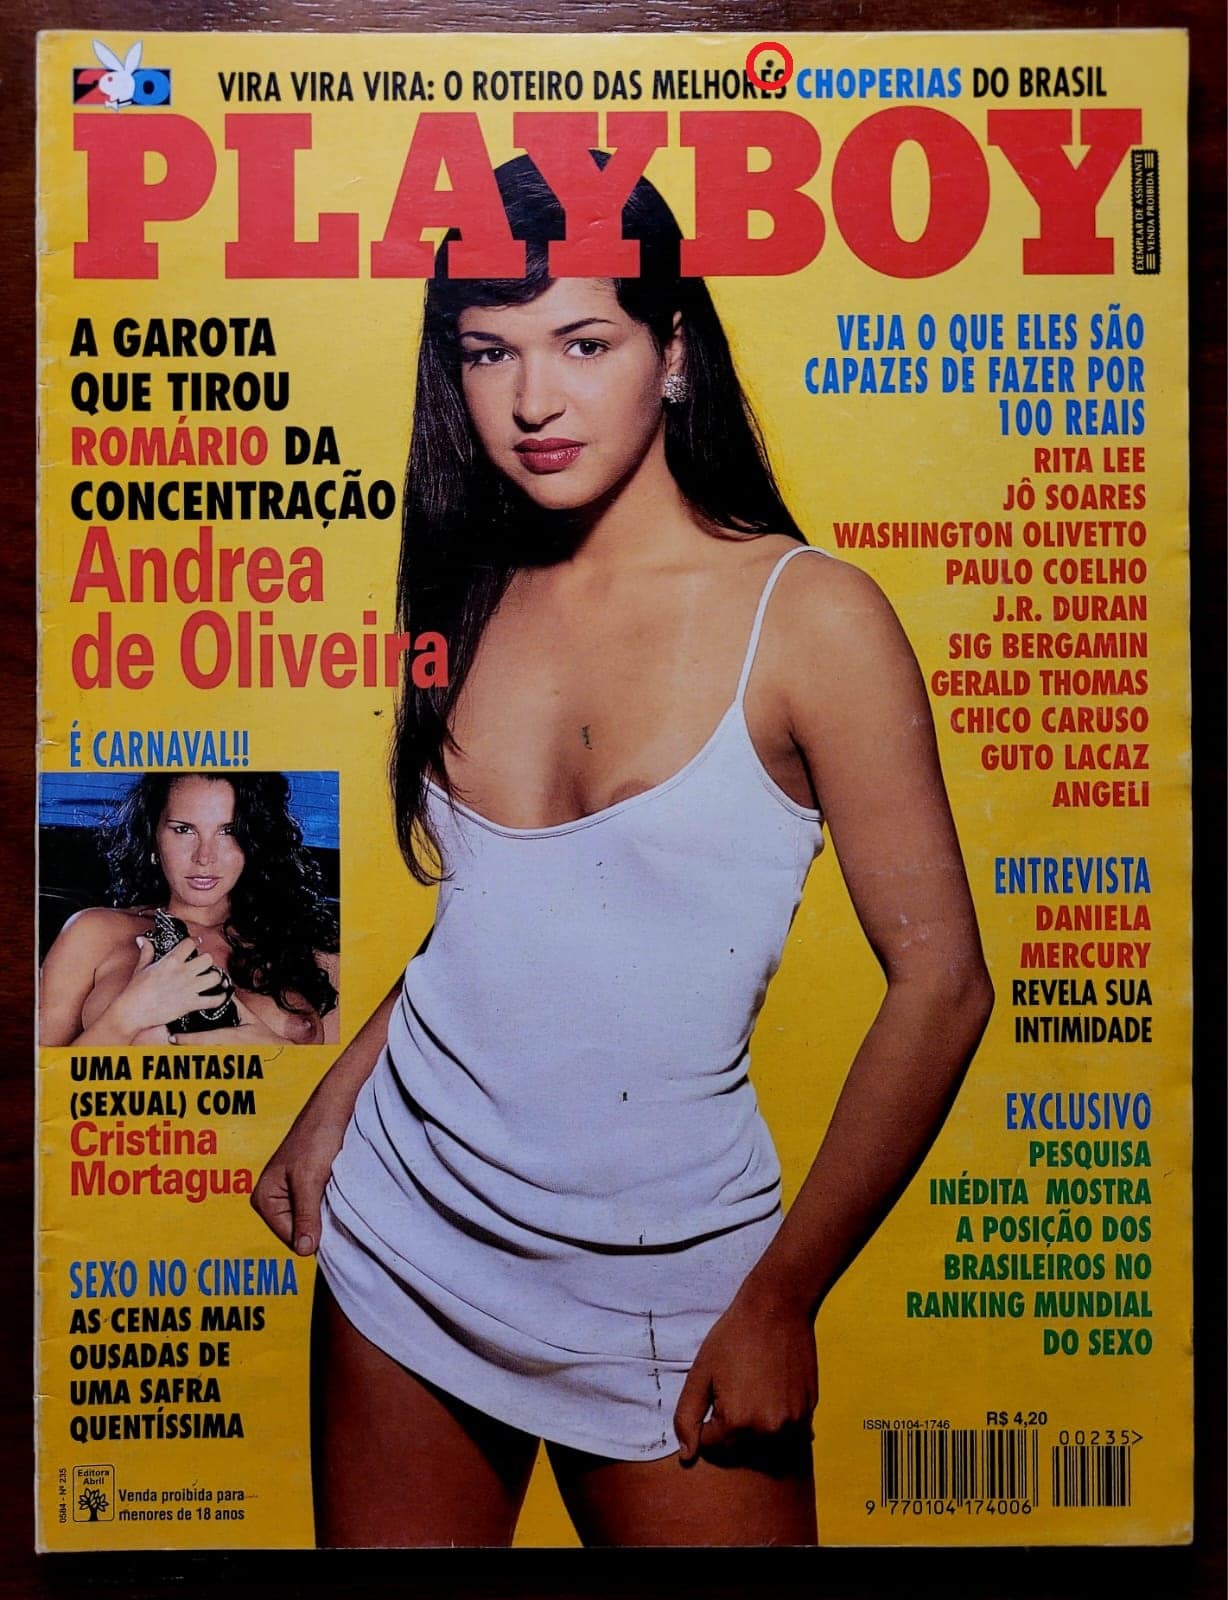 Playboy No 235 – Andrea de Oliveira 1 Casa do Colecionador